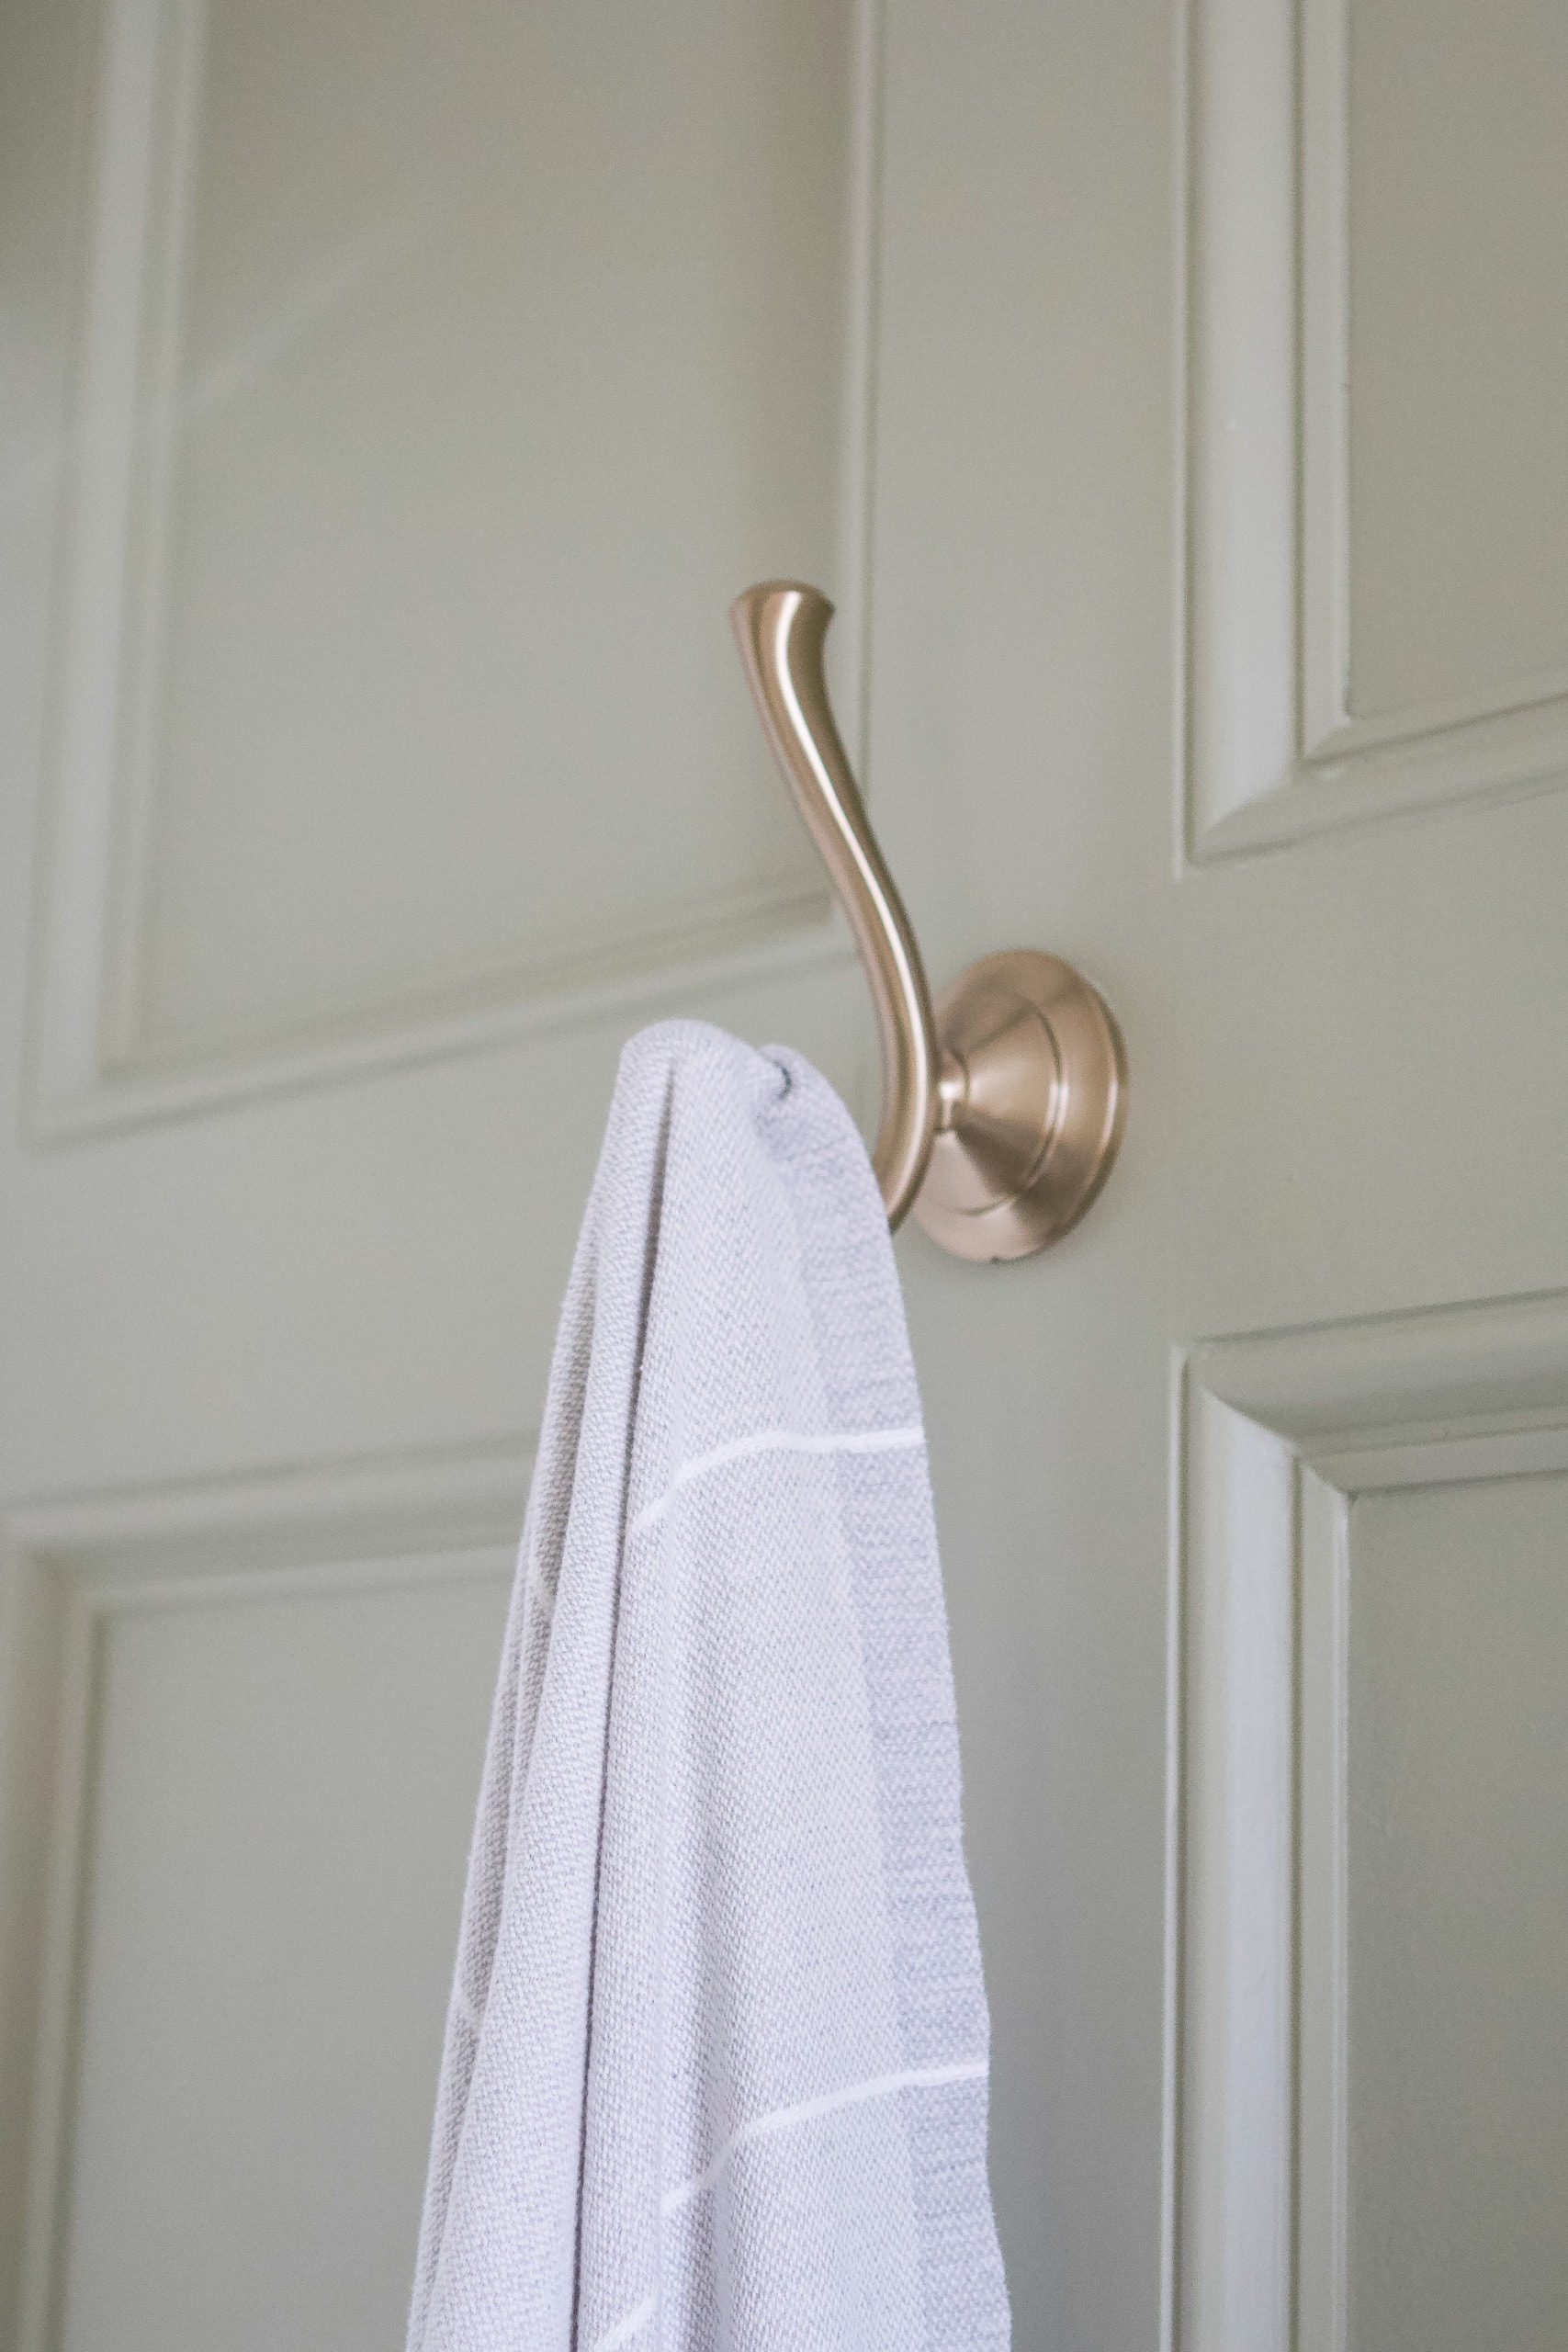 Brass towel hook